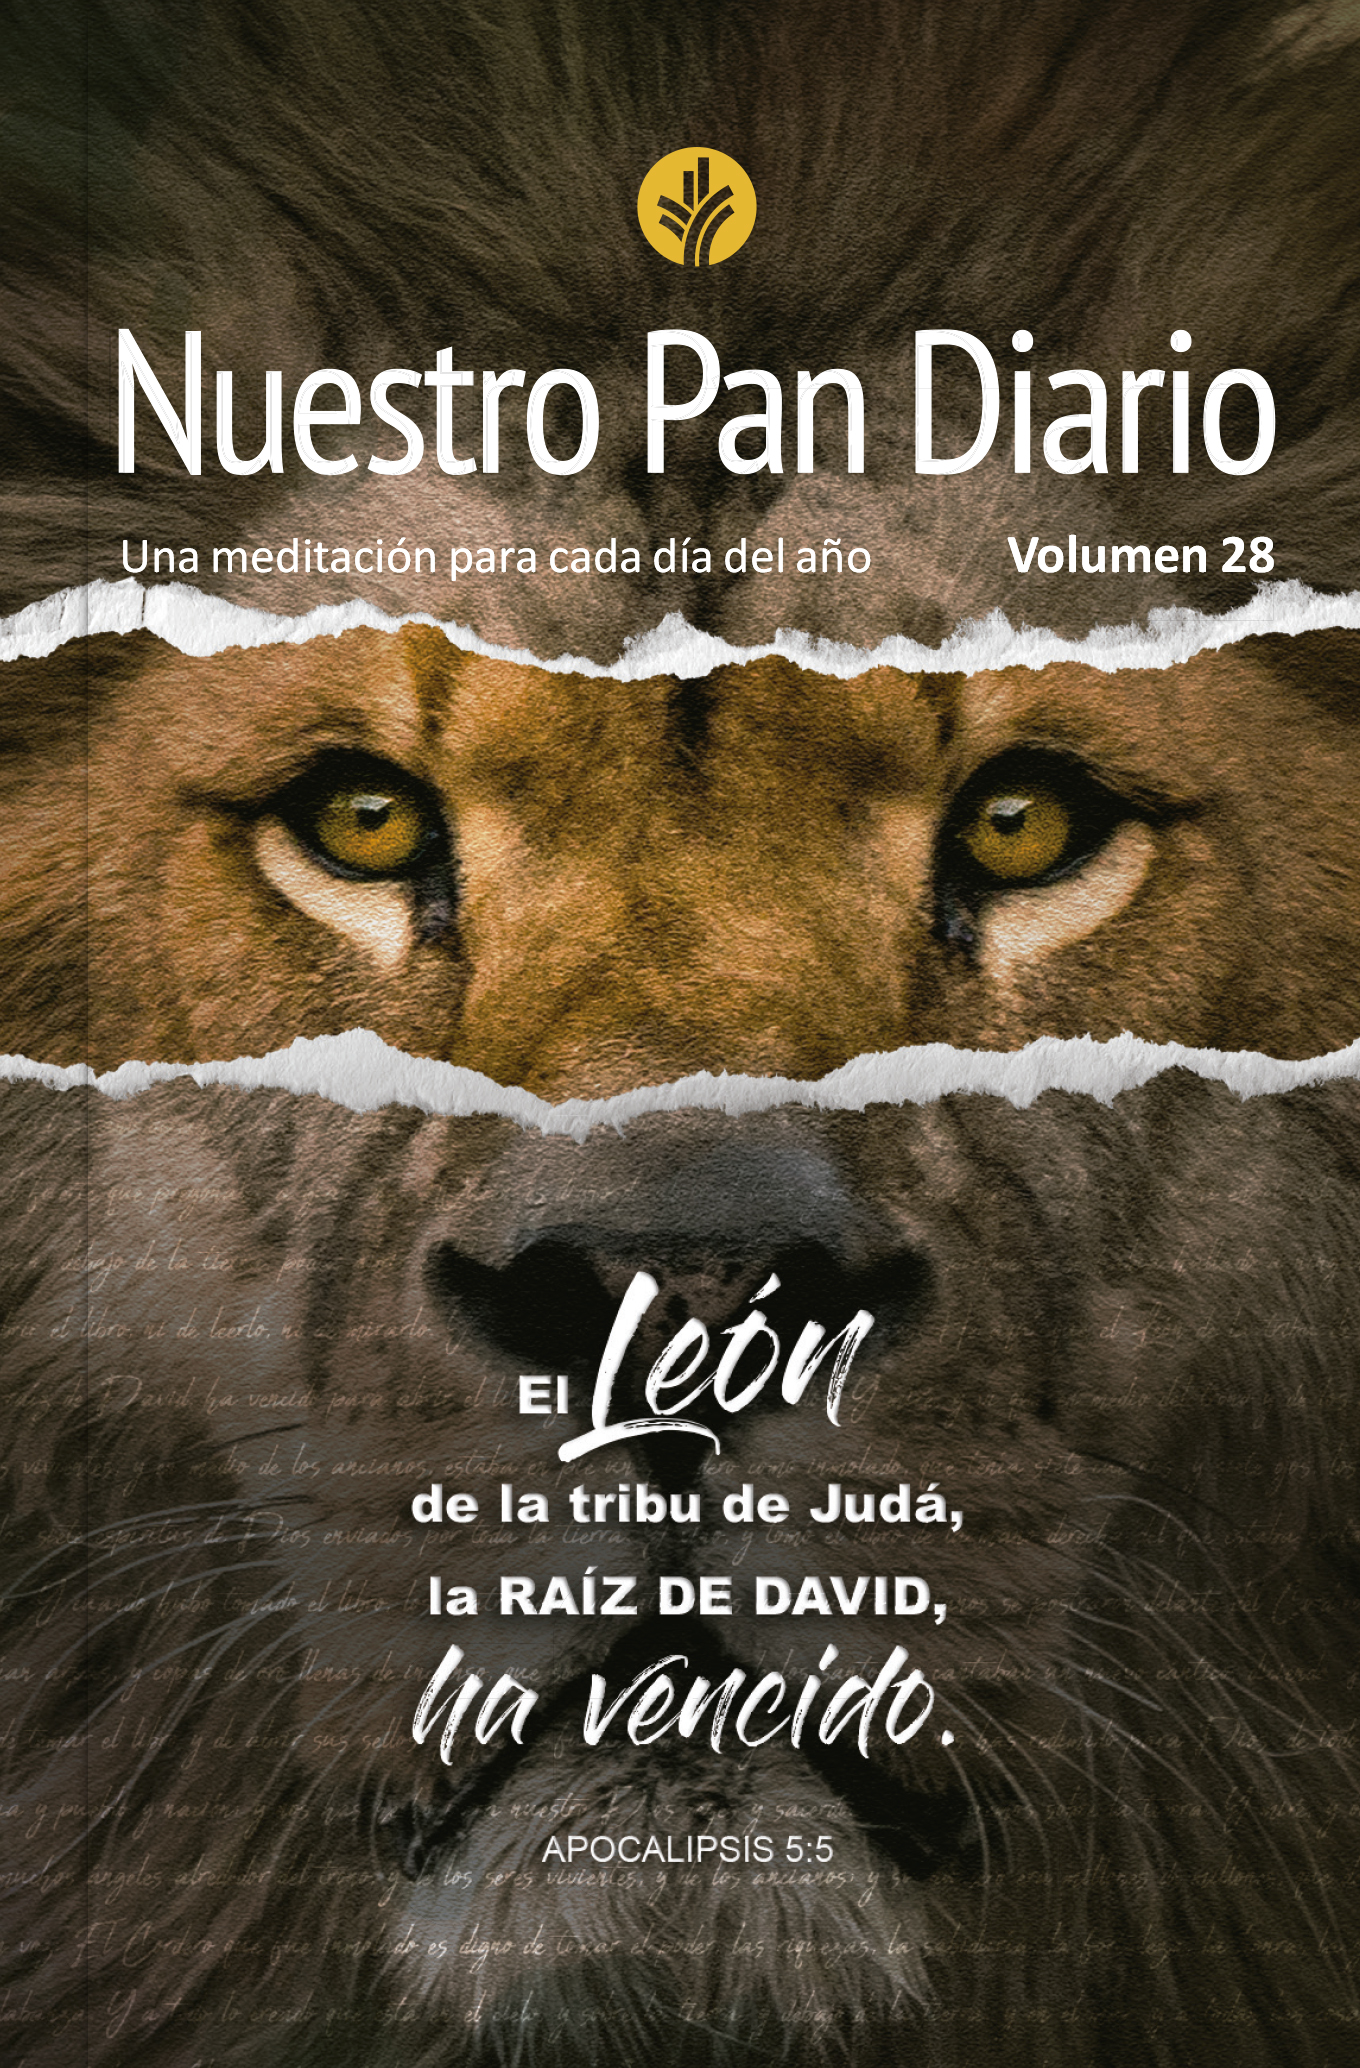 Nuestro Pan Diario vol 28 - León de Judá